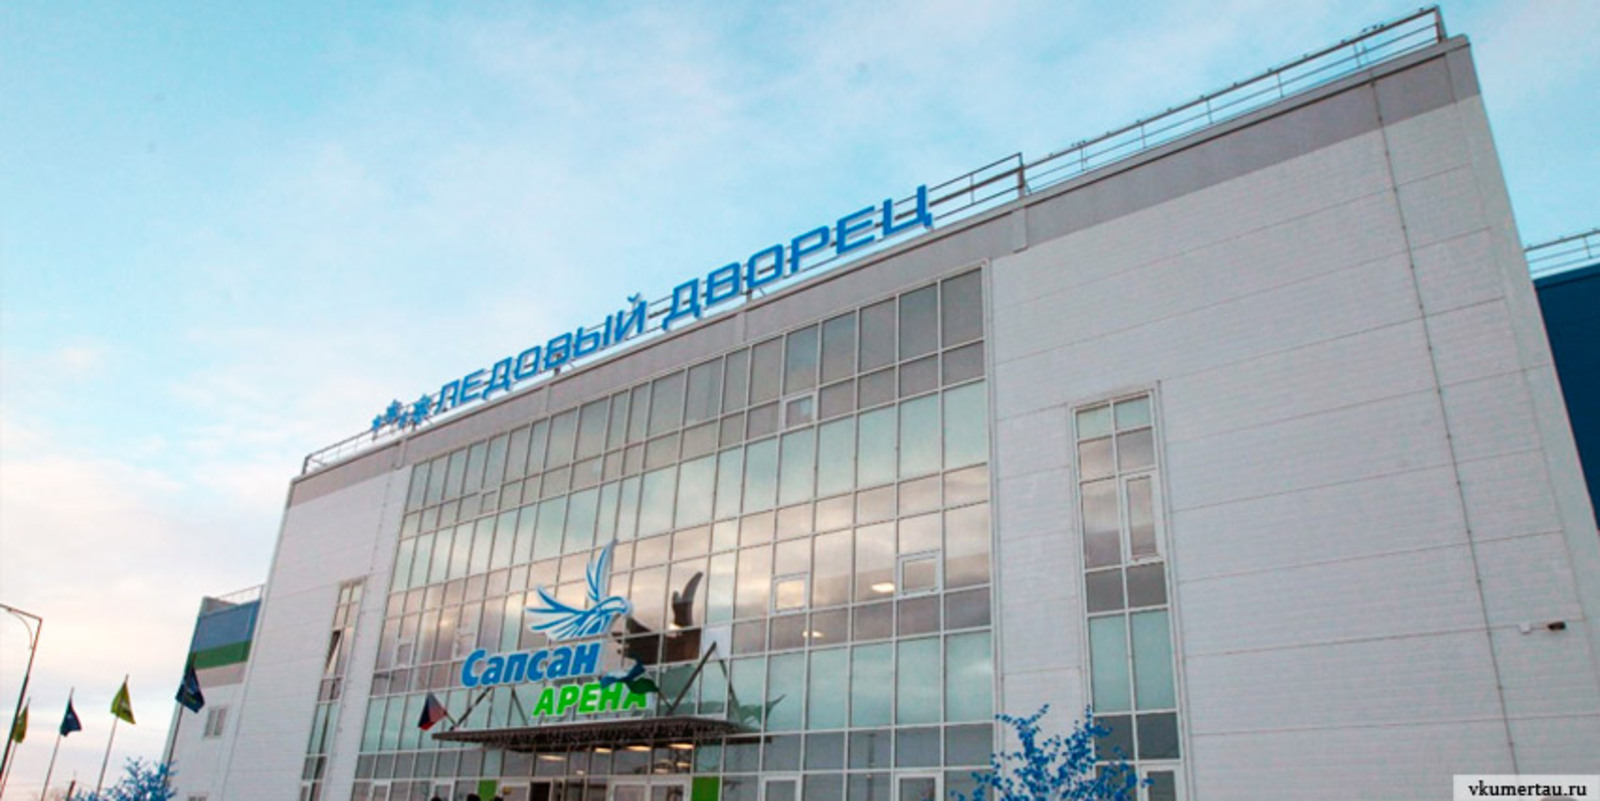 УФАС Башкирии нашел нарушения при строительстве ледовой арены в Кумертау